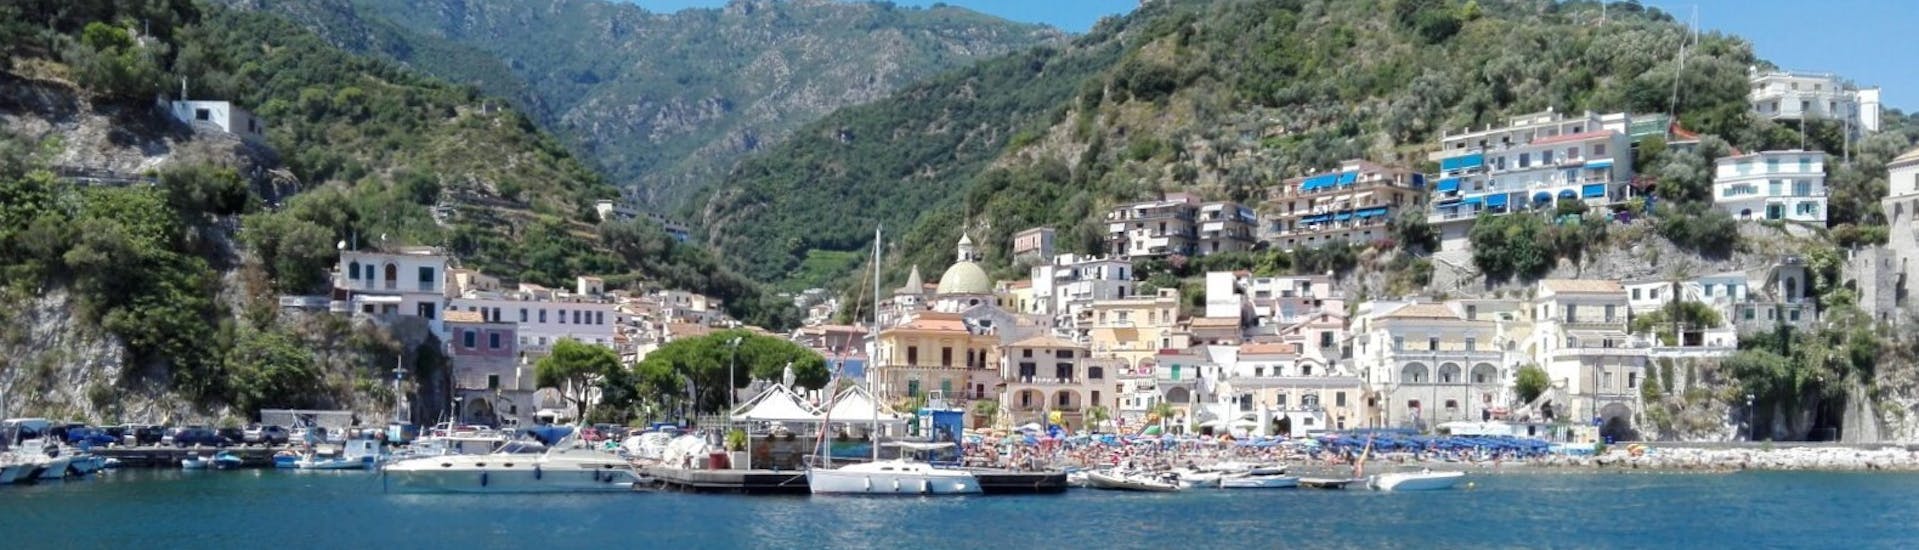 La côte sorrentine vu depuis le bateau lors de la Balade privée en bateau de Sorrente à Positano avec Apéritif et Snorkeling avec The Morgans.